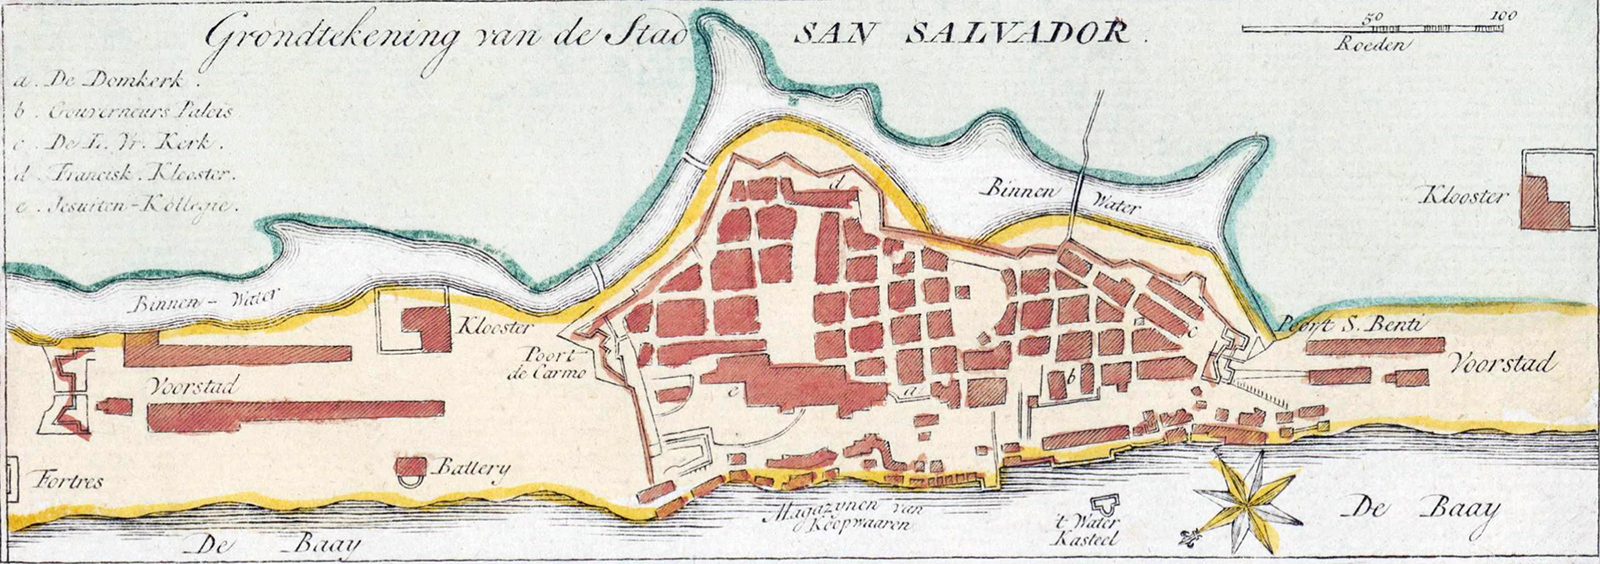 Mapa Salvador Século 18